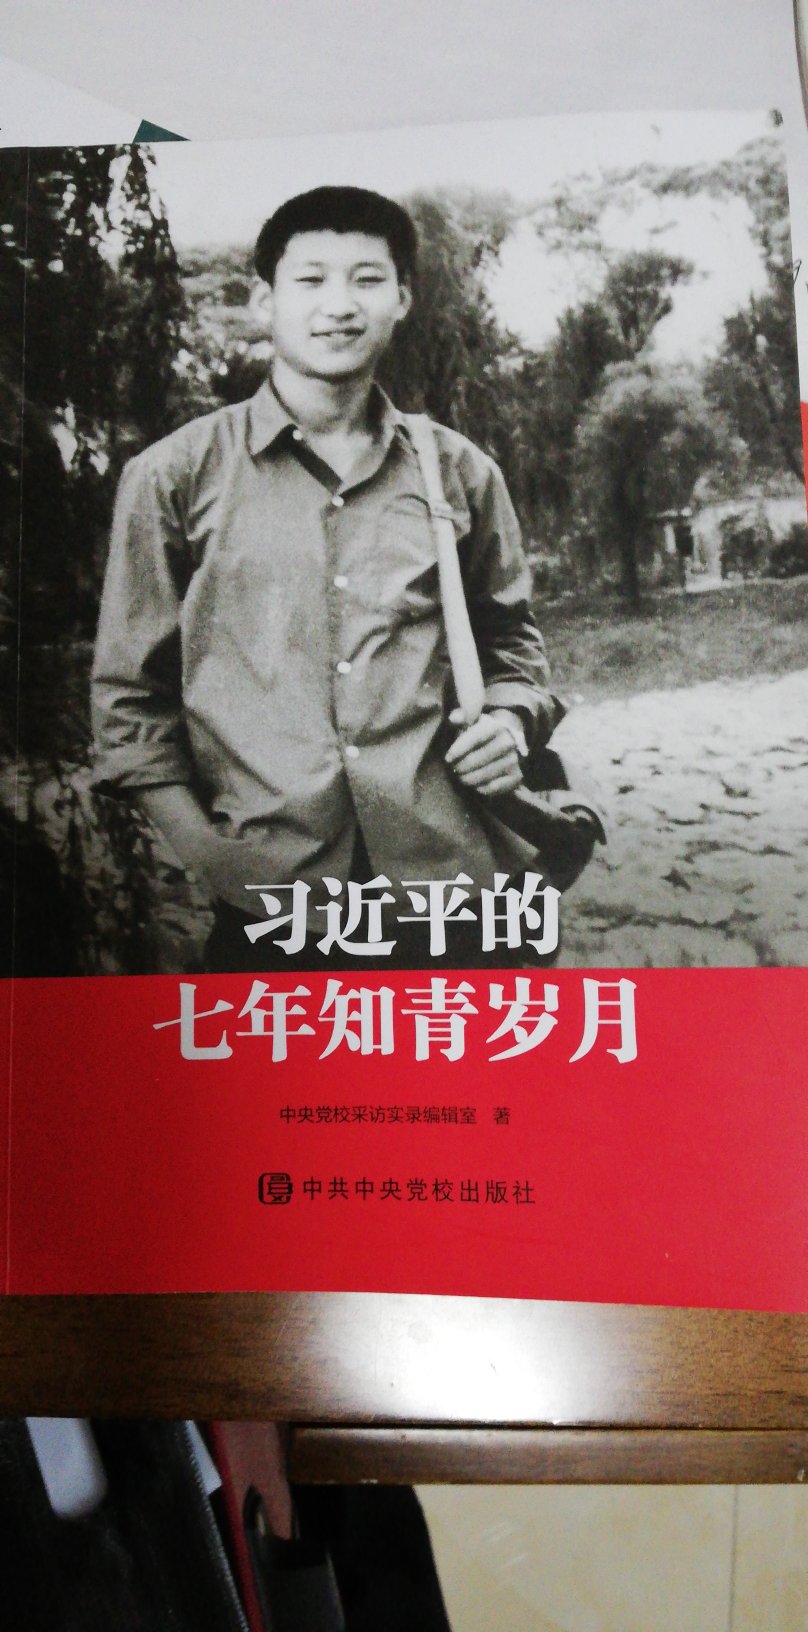 学习习近平新时代中国特色社会主义思想的宝书，全面系统的讲述